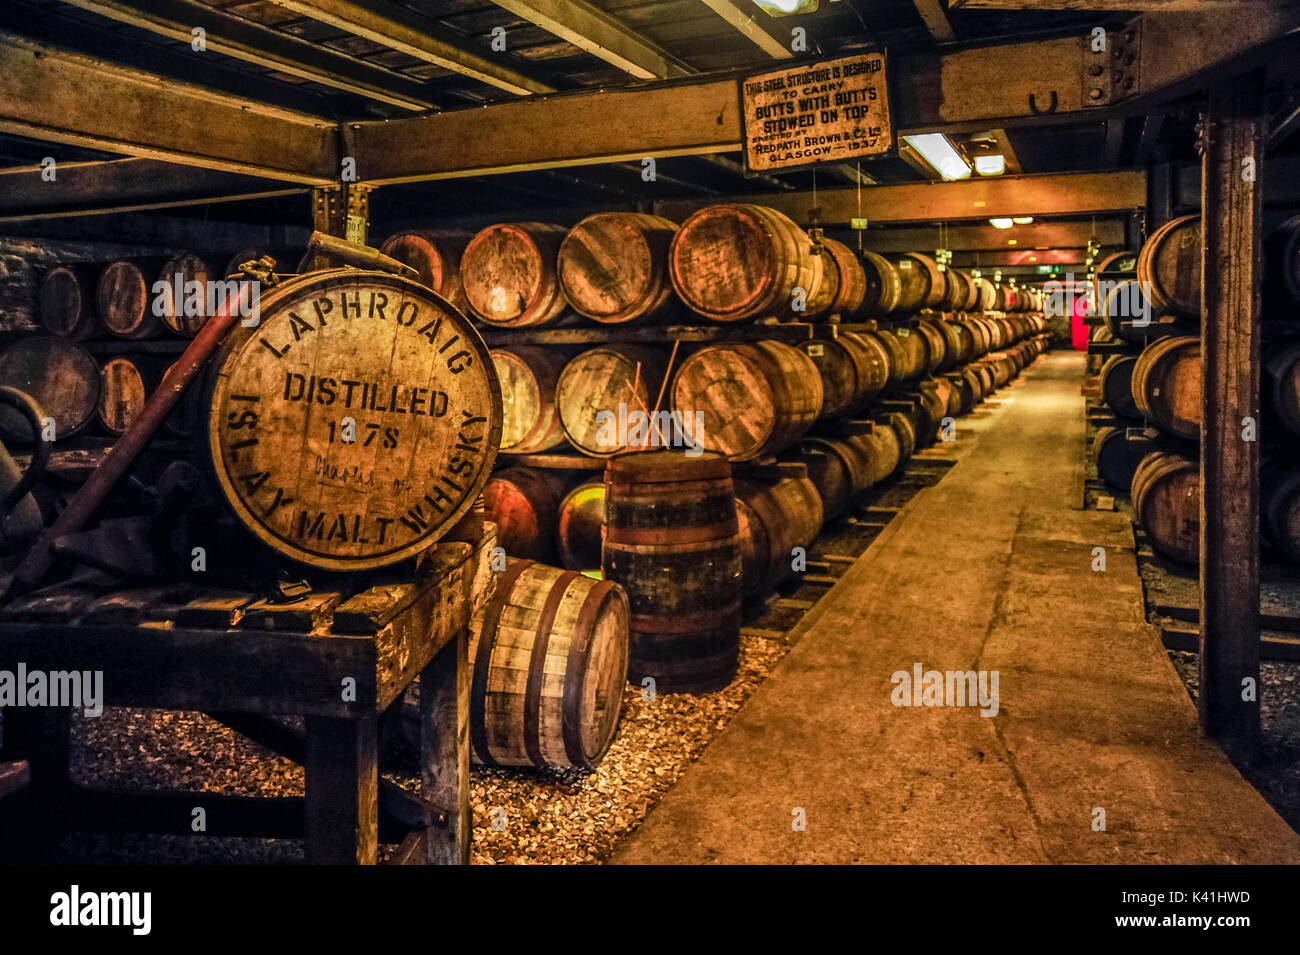 whisky-reifung-im-fass-an-der-renommierten-laphroaig-distillery-isle-of-islay-schottland-k41hwd.jpg